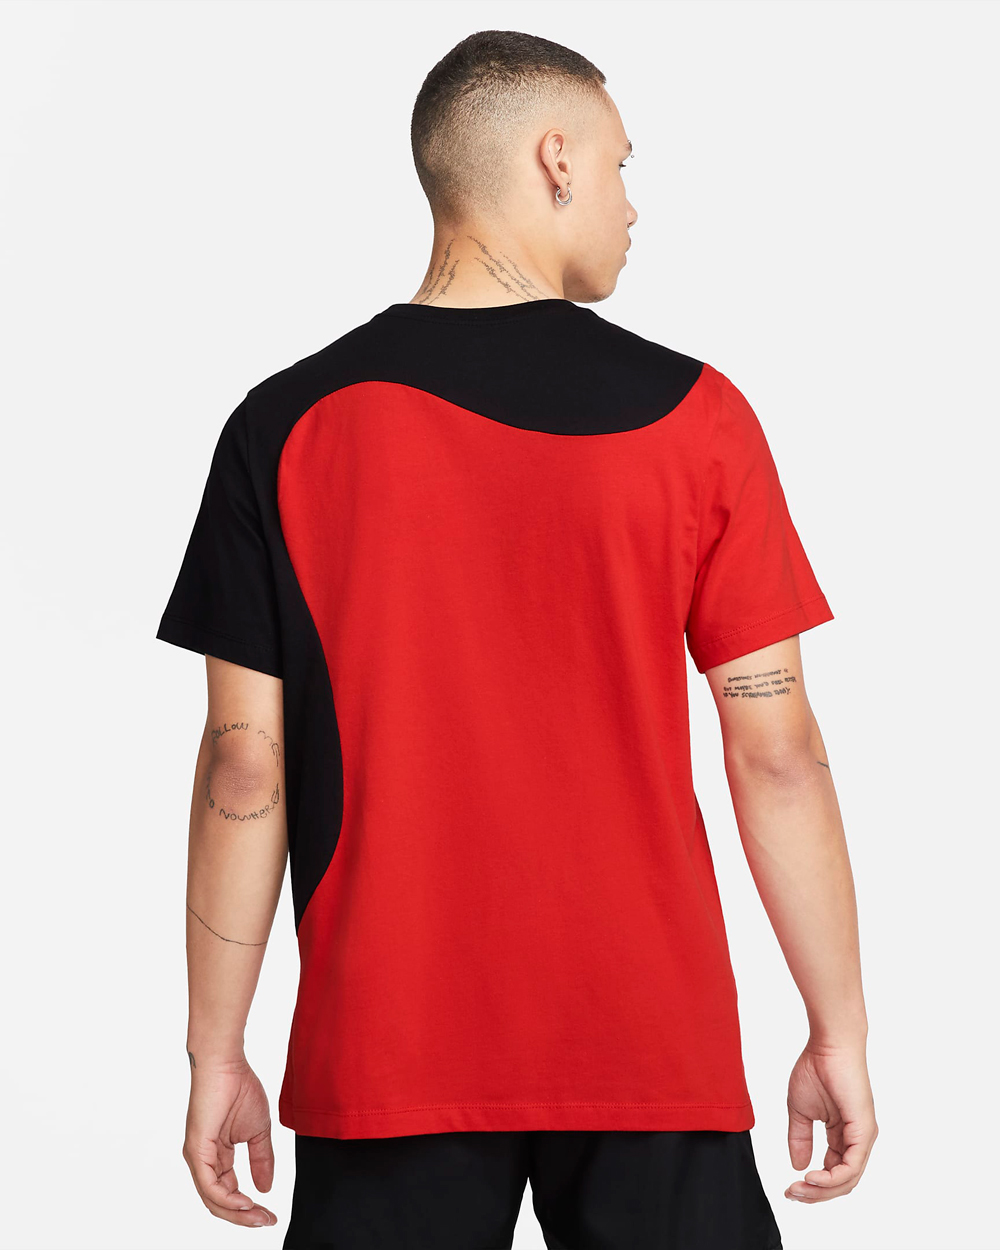 nike-color-clash-t-shirt-black-university-red-2